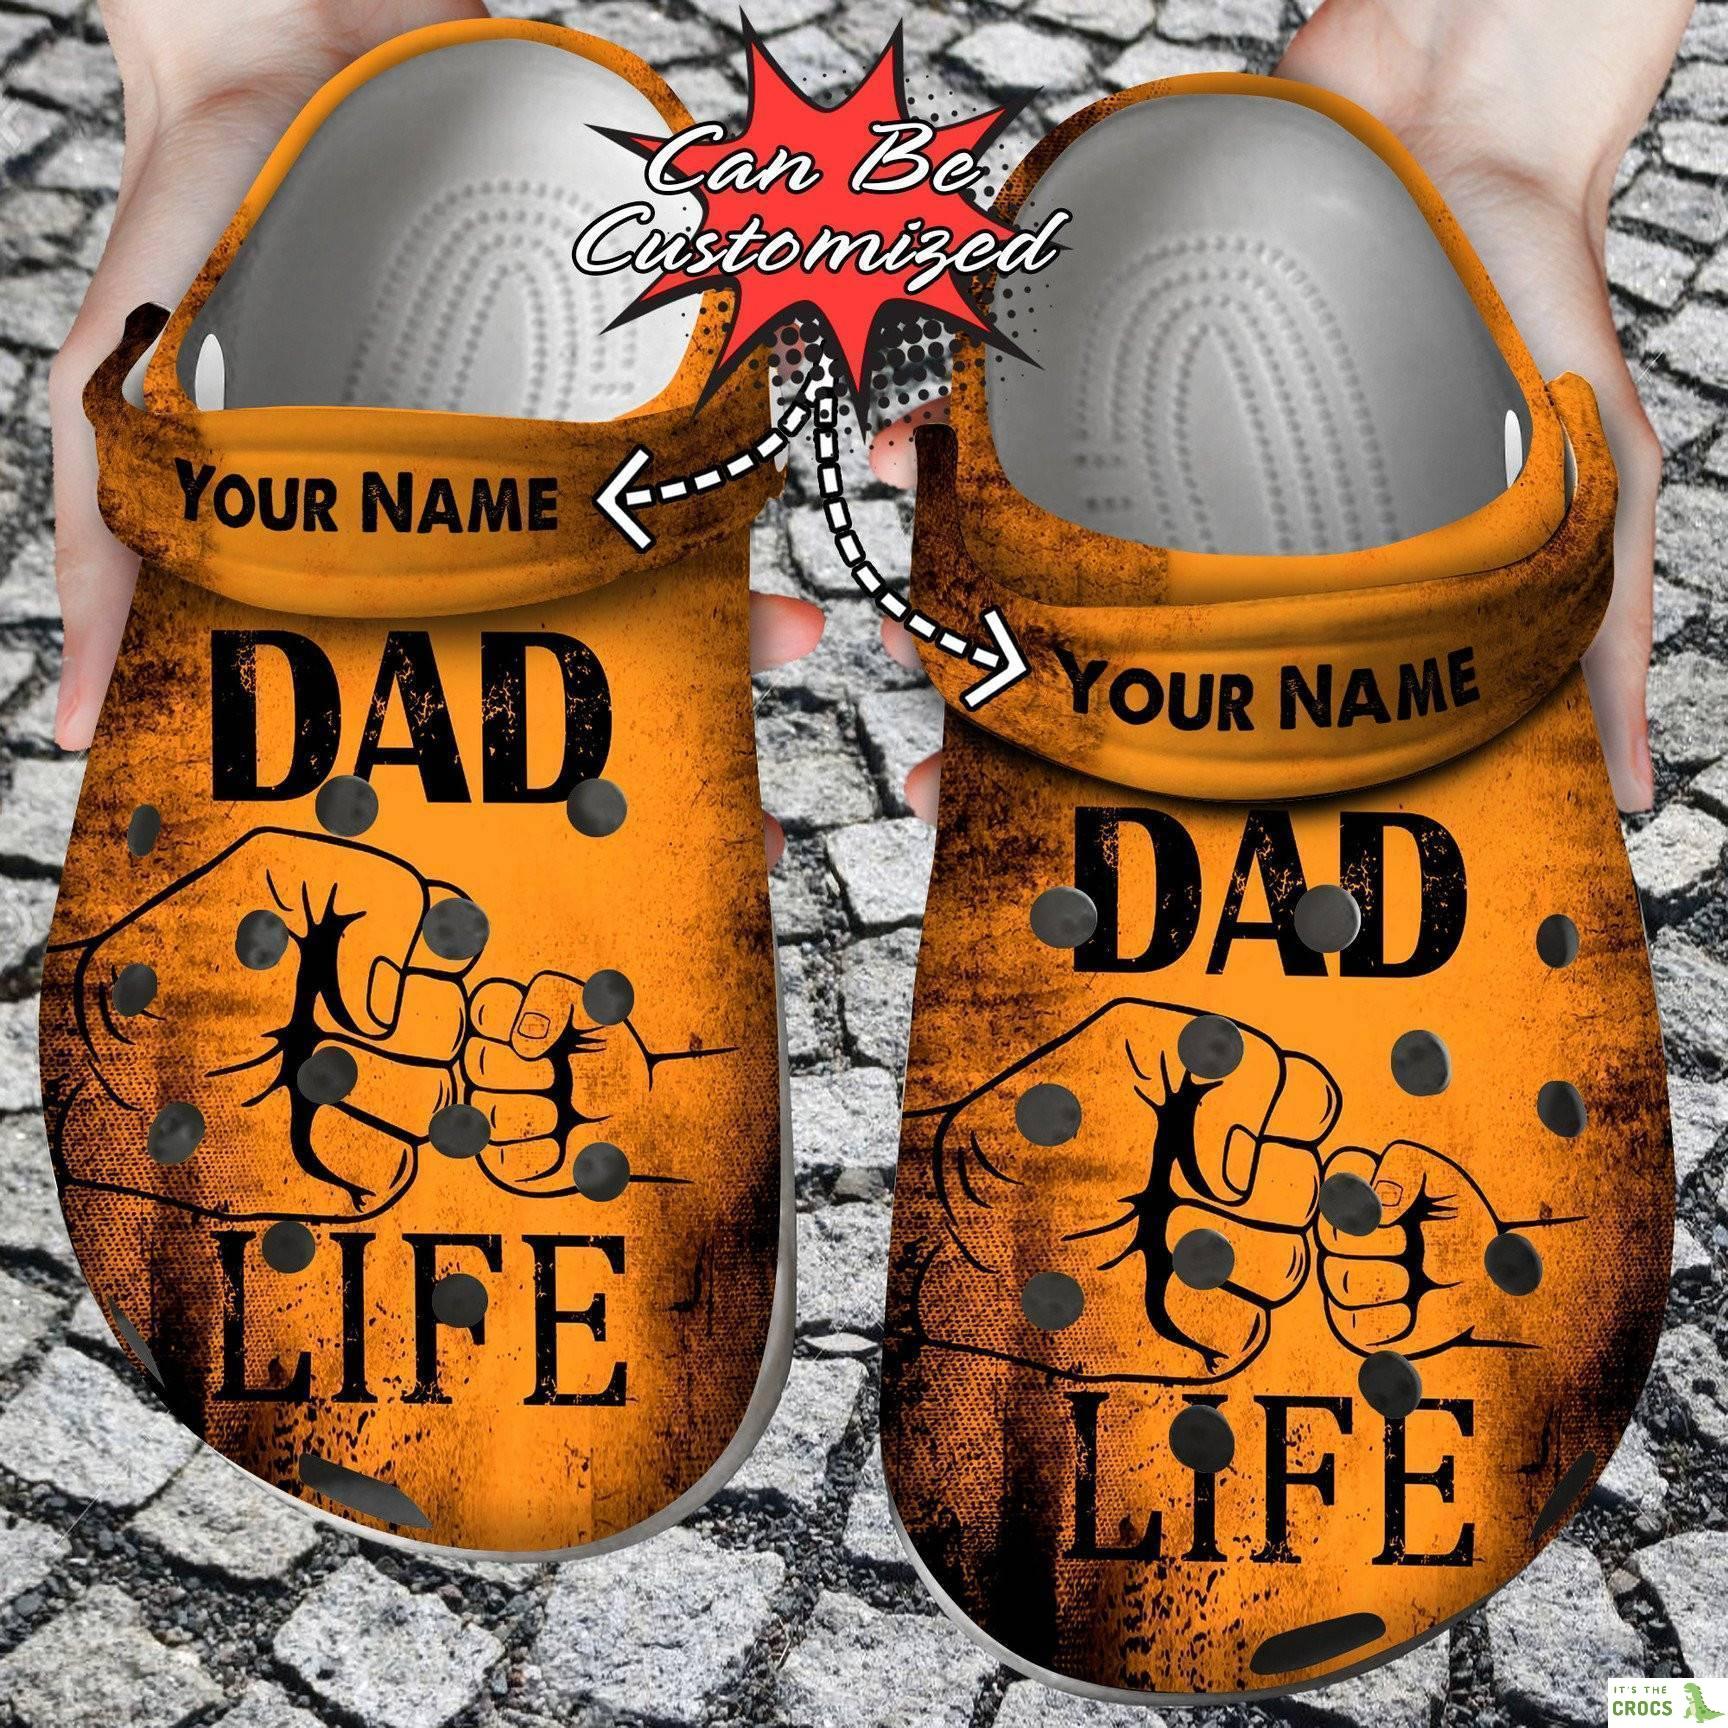 Dad Life Mens Fist Bump Crocs Clog Shoes Fathers Custom Crocs